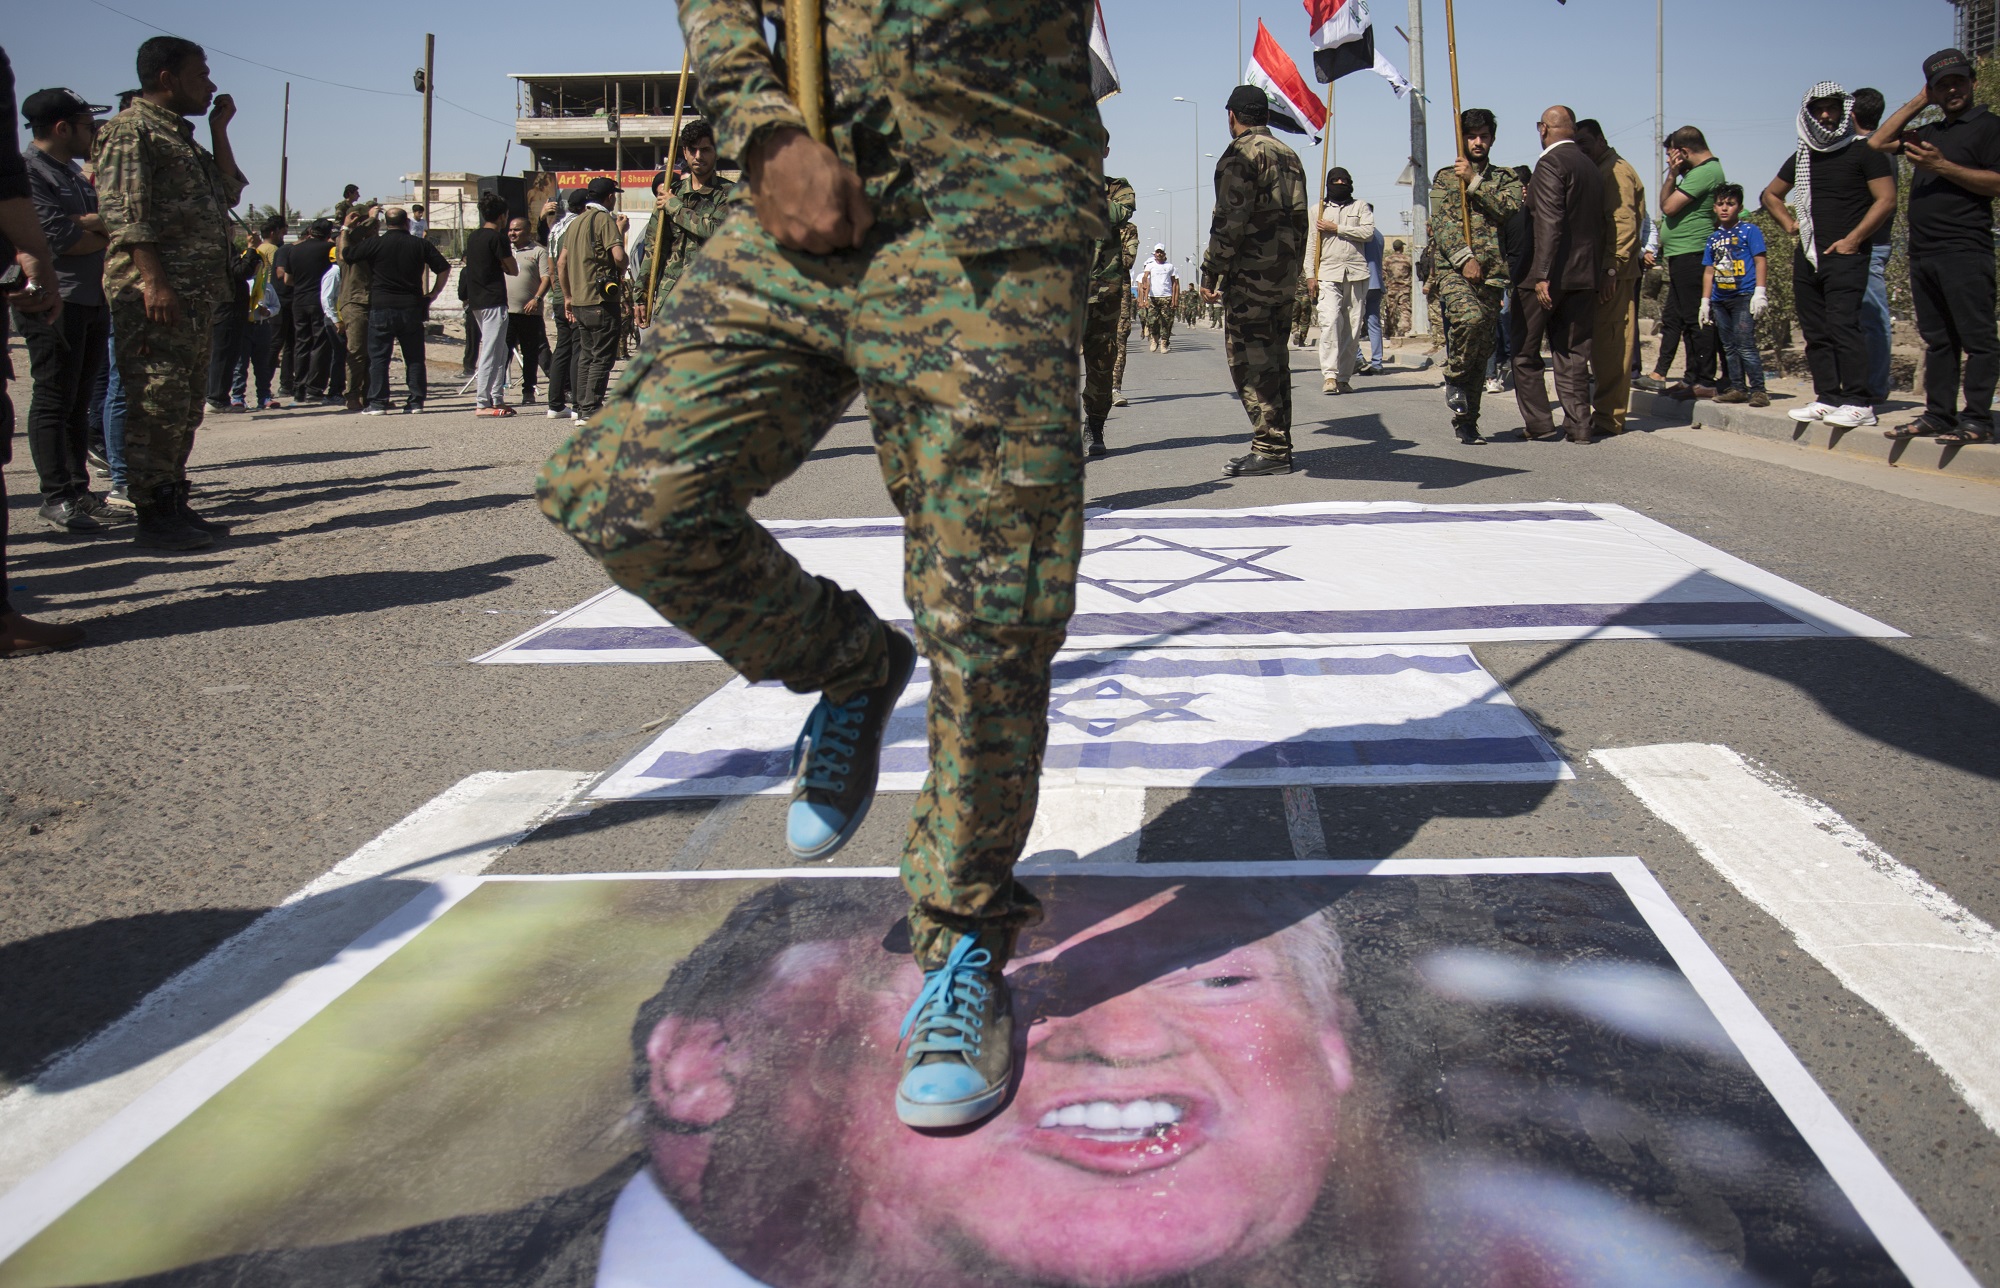 Queman bandera estadounidense y pisotean foto de Trump durante marcha en Irak